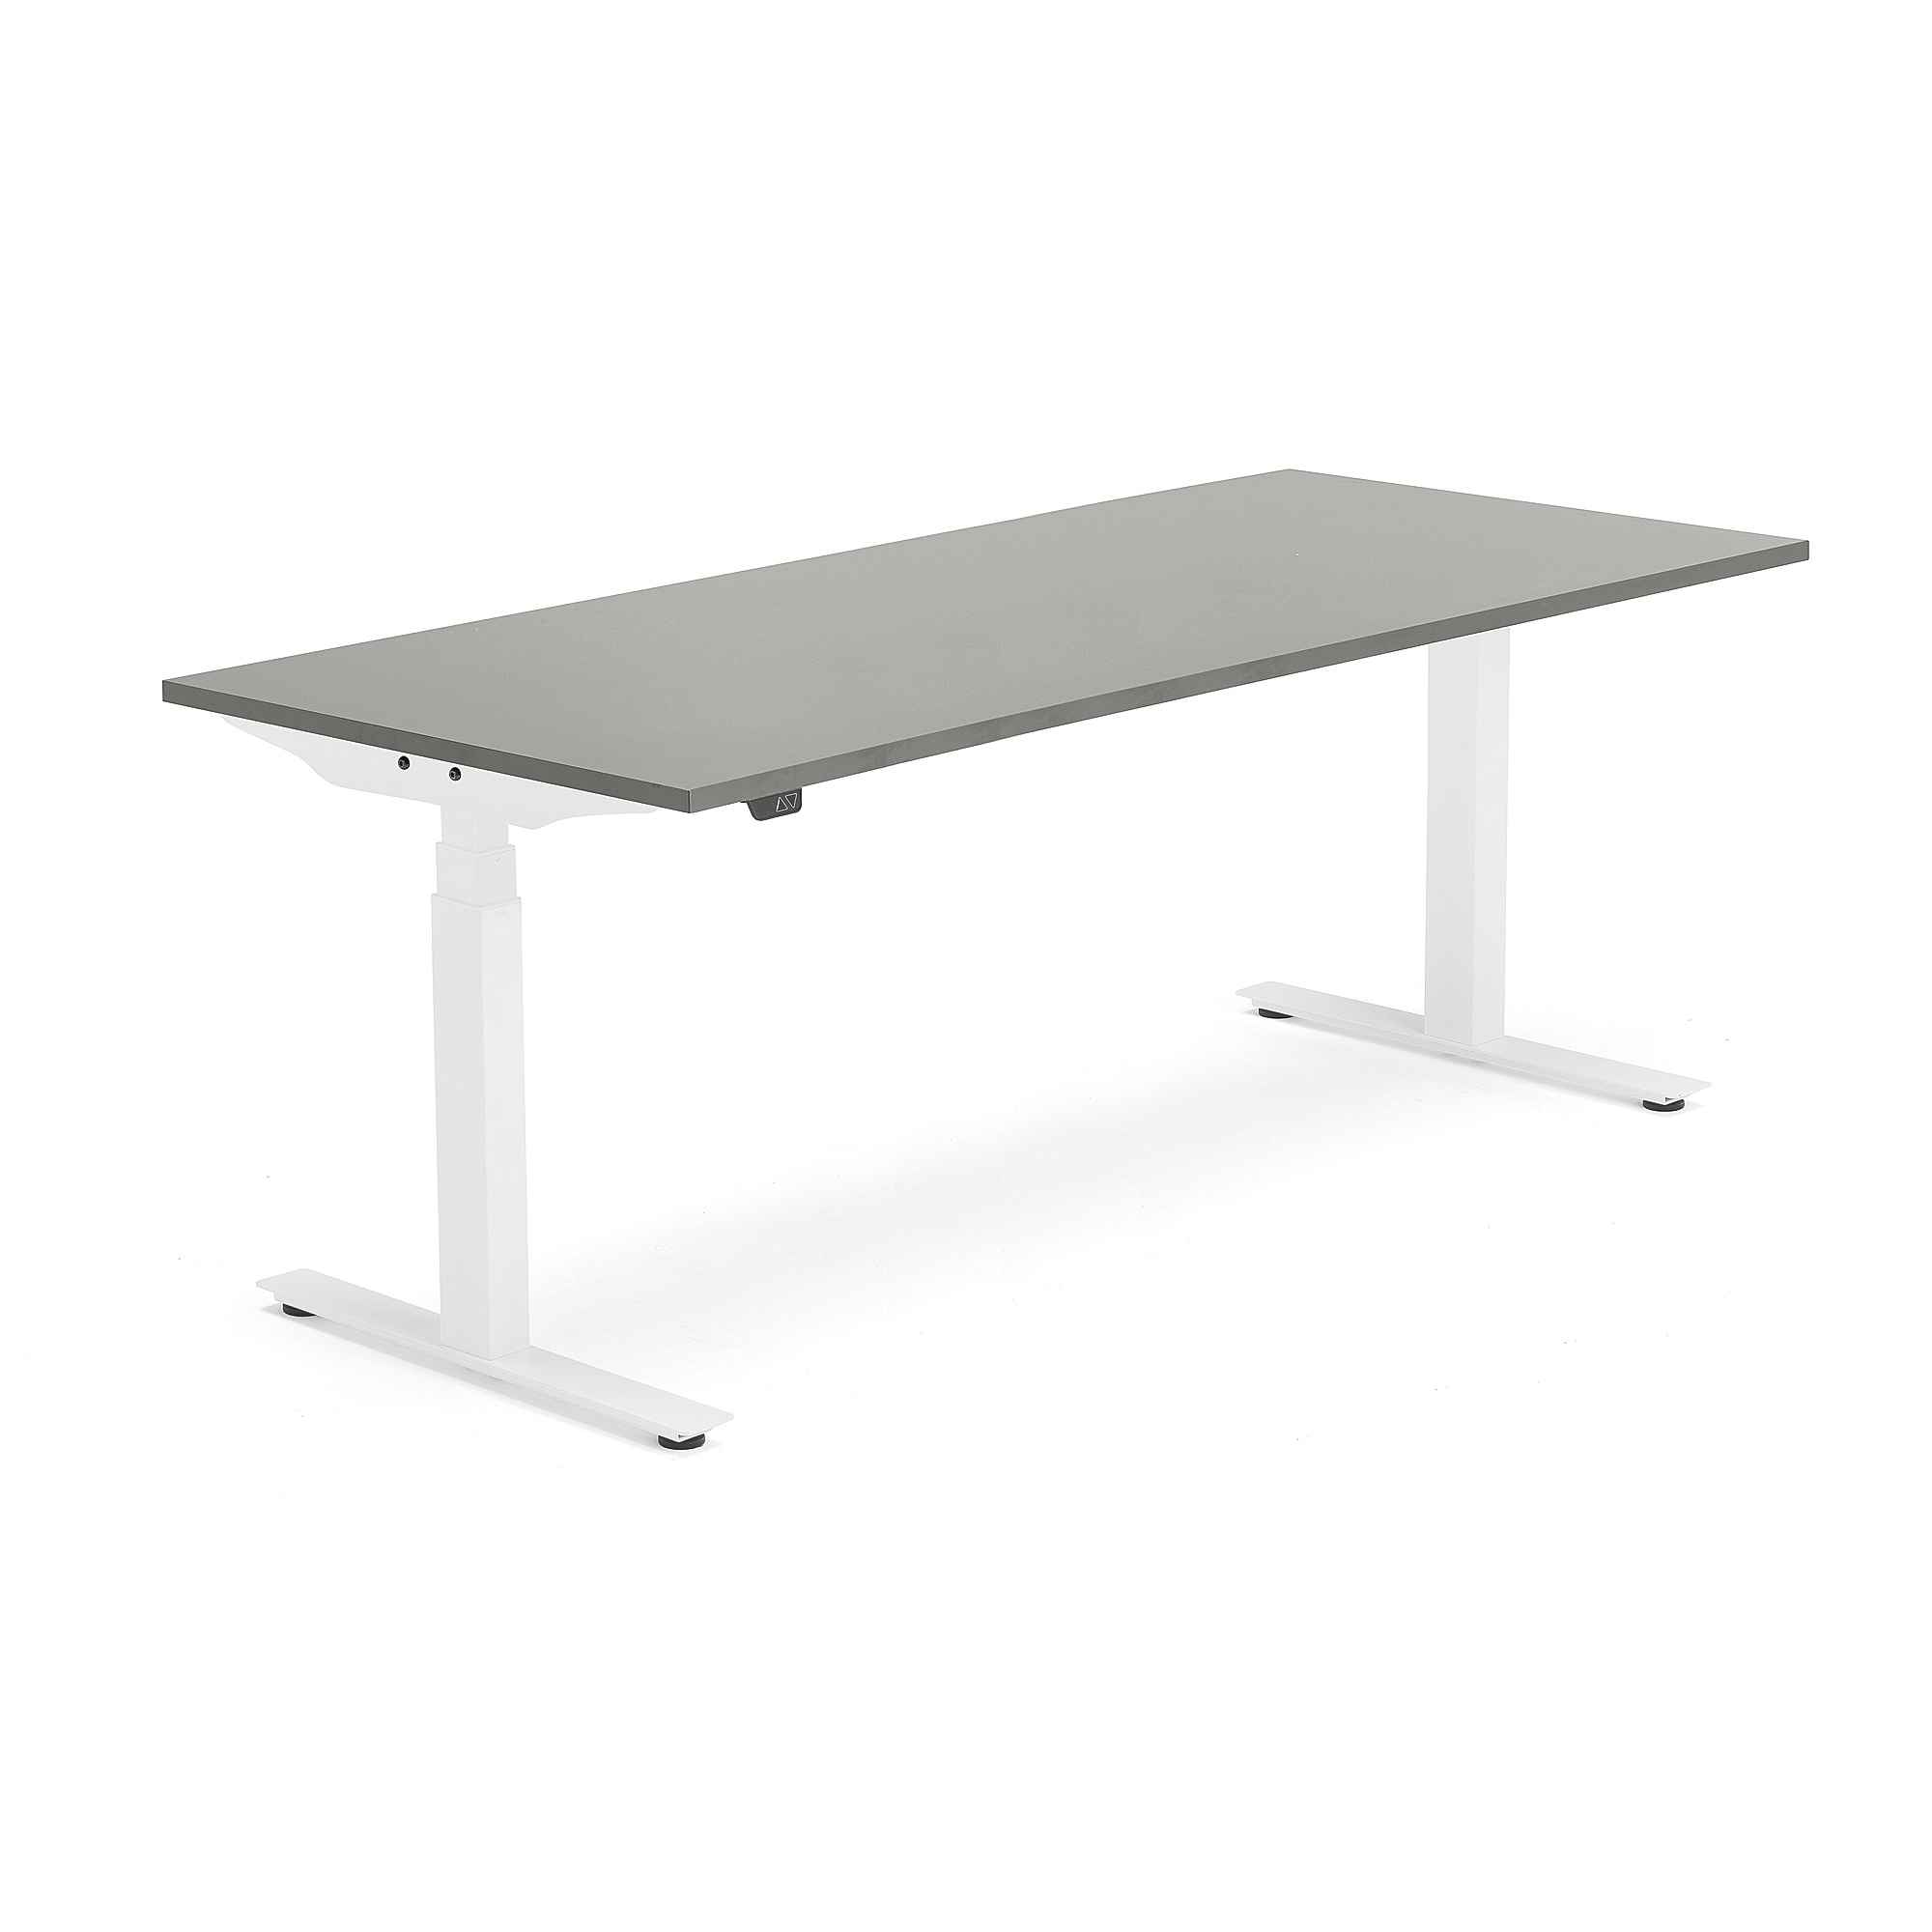 Výškově nastavitelný stůl MODULUS, 1800x800 mm, bílý rám, světle šedá